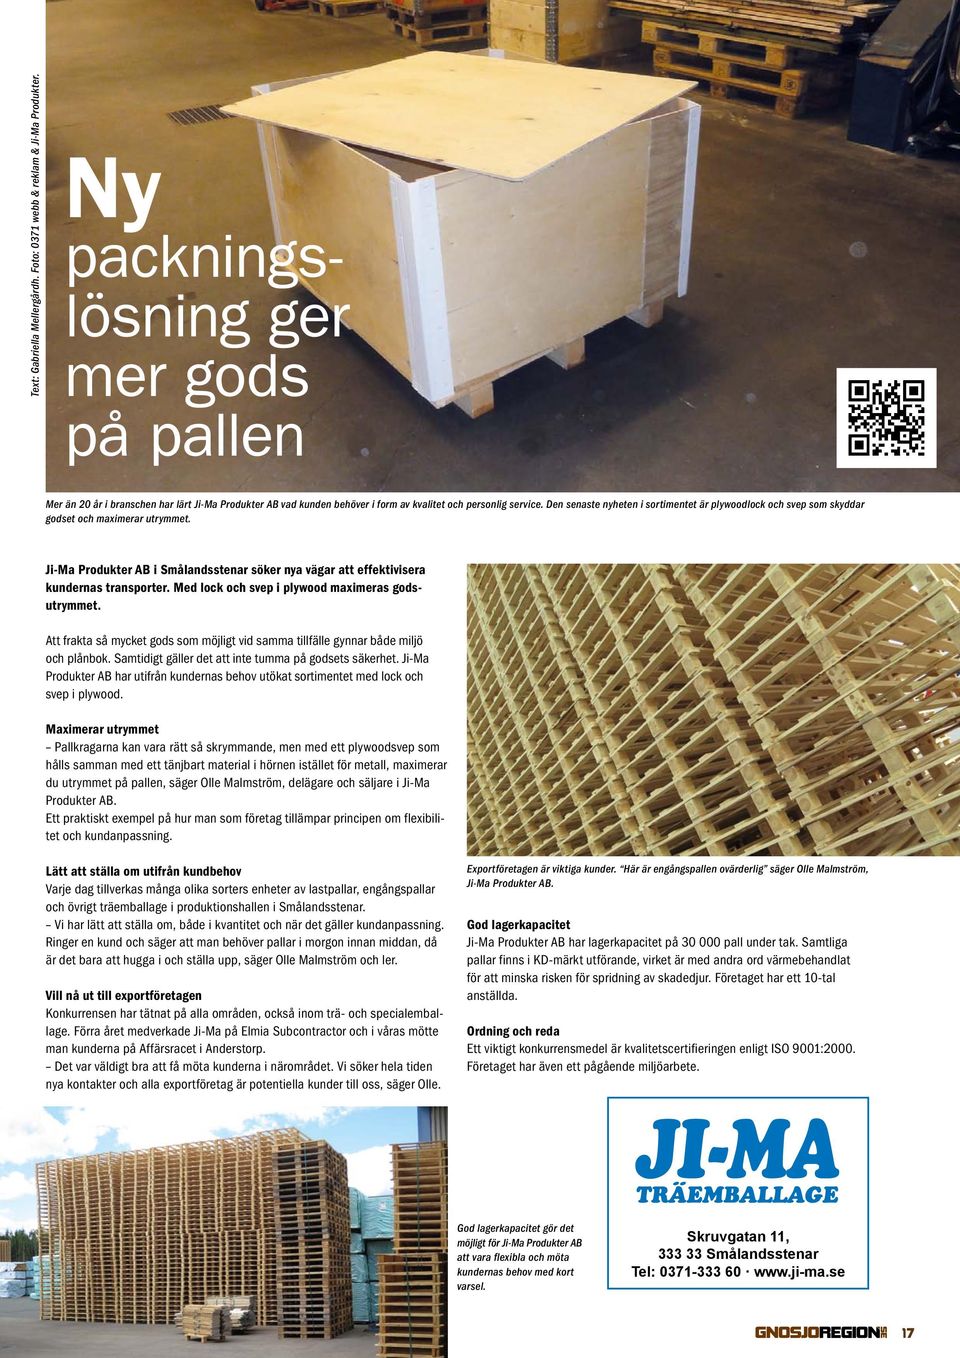 Den senaste nyheten i sortimentet är plywoodlock och svep som skyddar godset och maximerar utrymmet. Ji-Ma Produkter AB i Smålandsstenar söker nya vägar att effektivisera kundernas transporter.